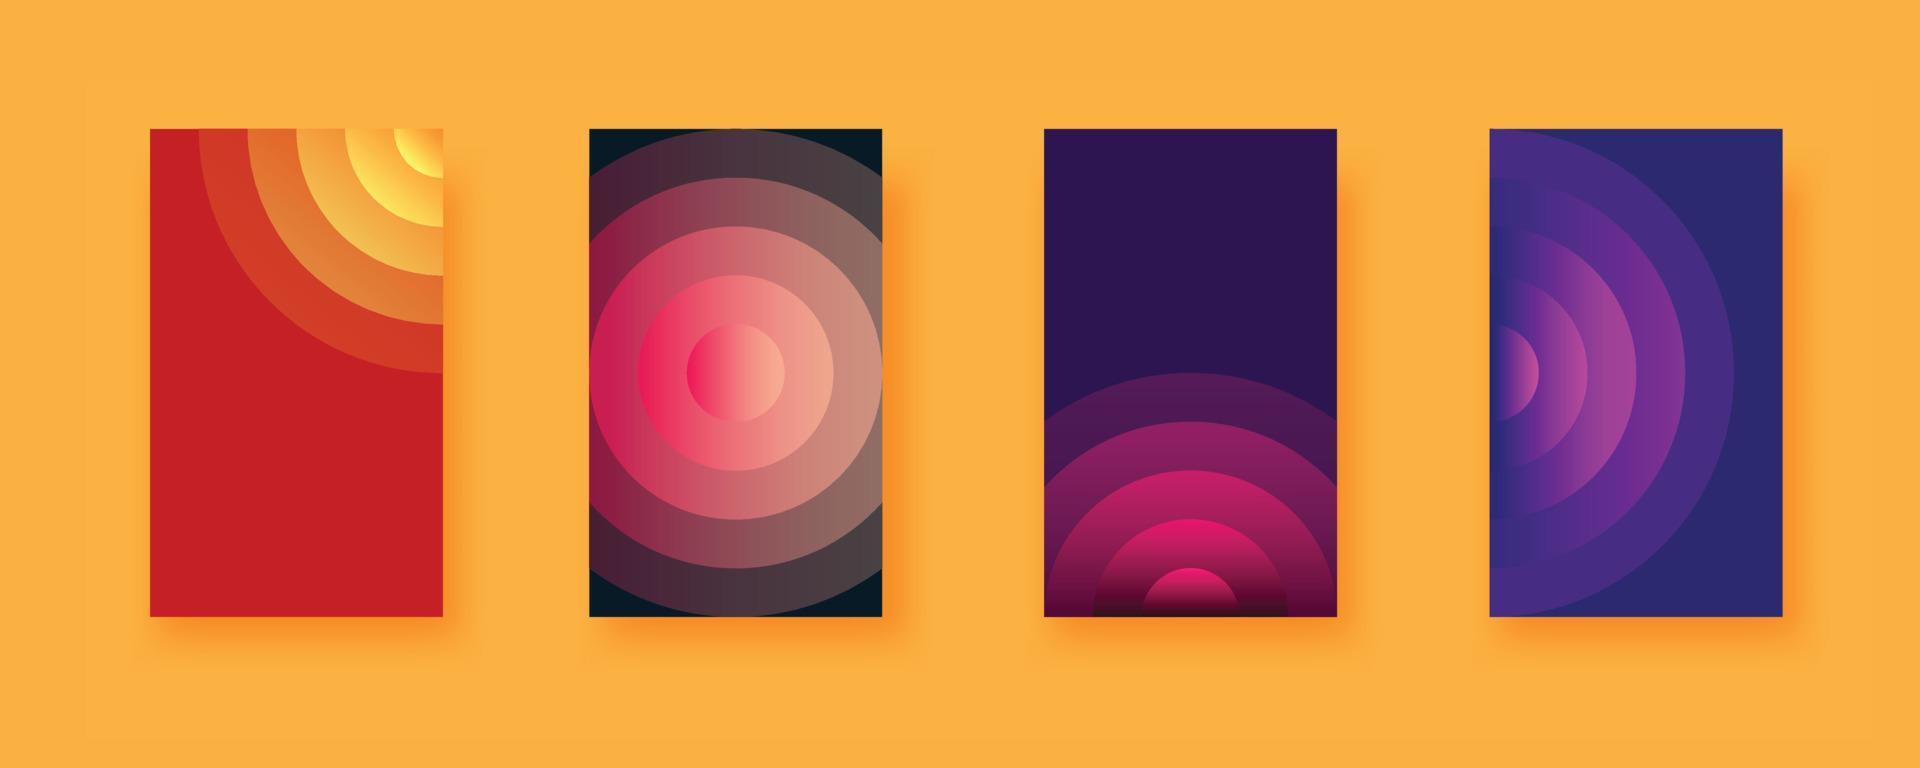 ensemble de fond vectoriel abstrait de cercles avec des formes en spirale et des dégradés de couleurs. collection de lignes rondes empilées pour une couverture au design futuriste minimaliste.